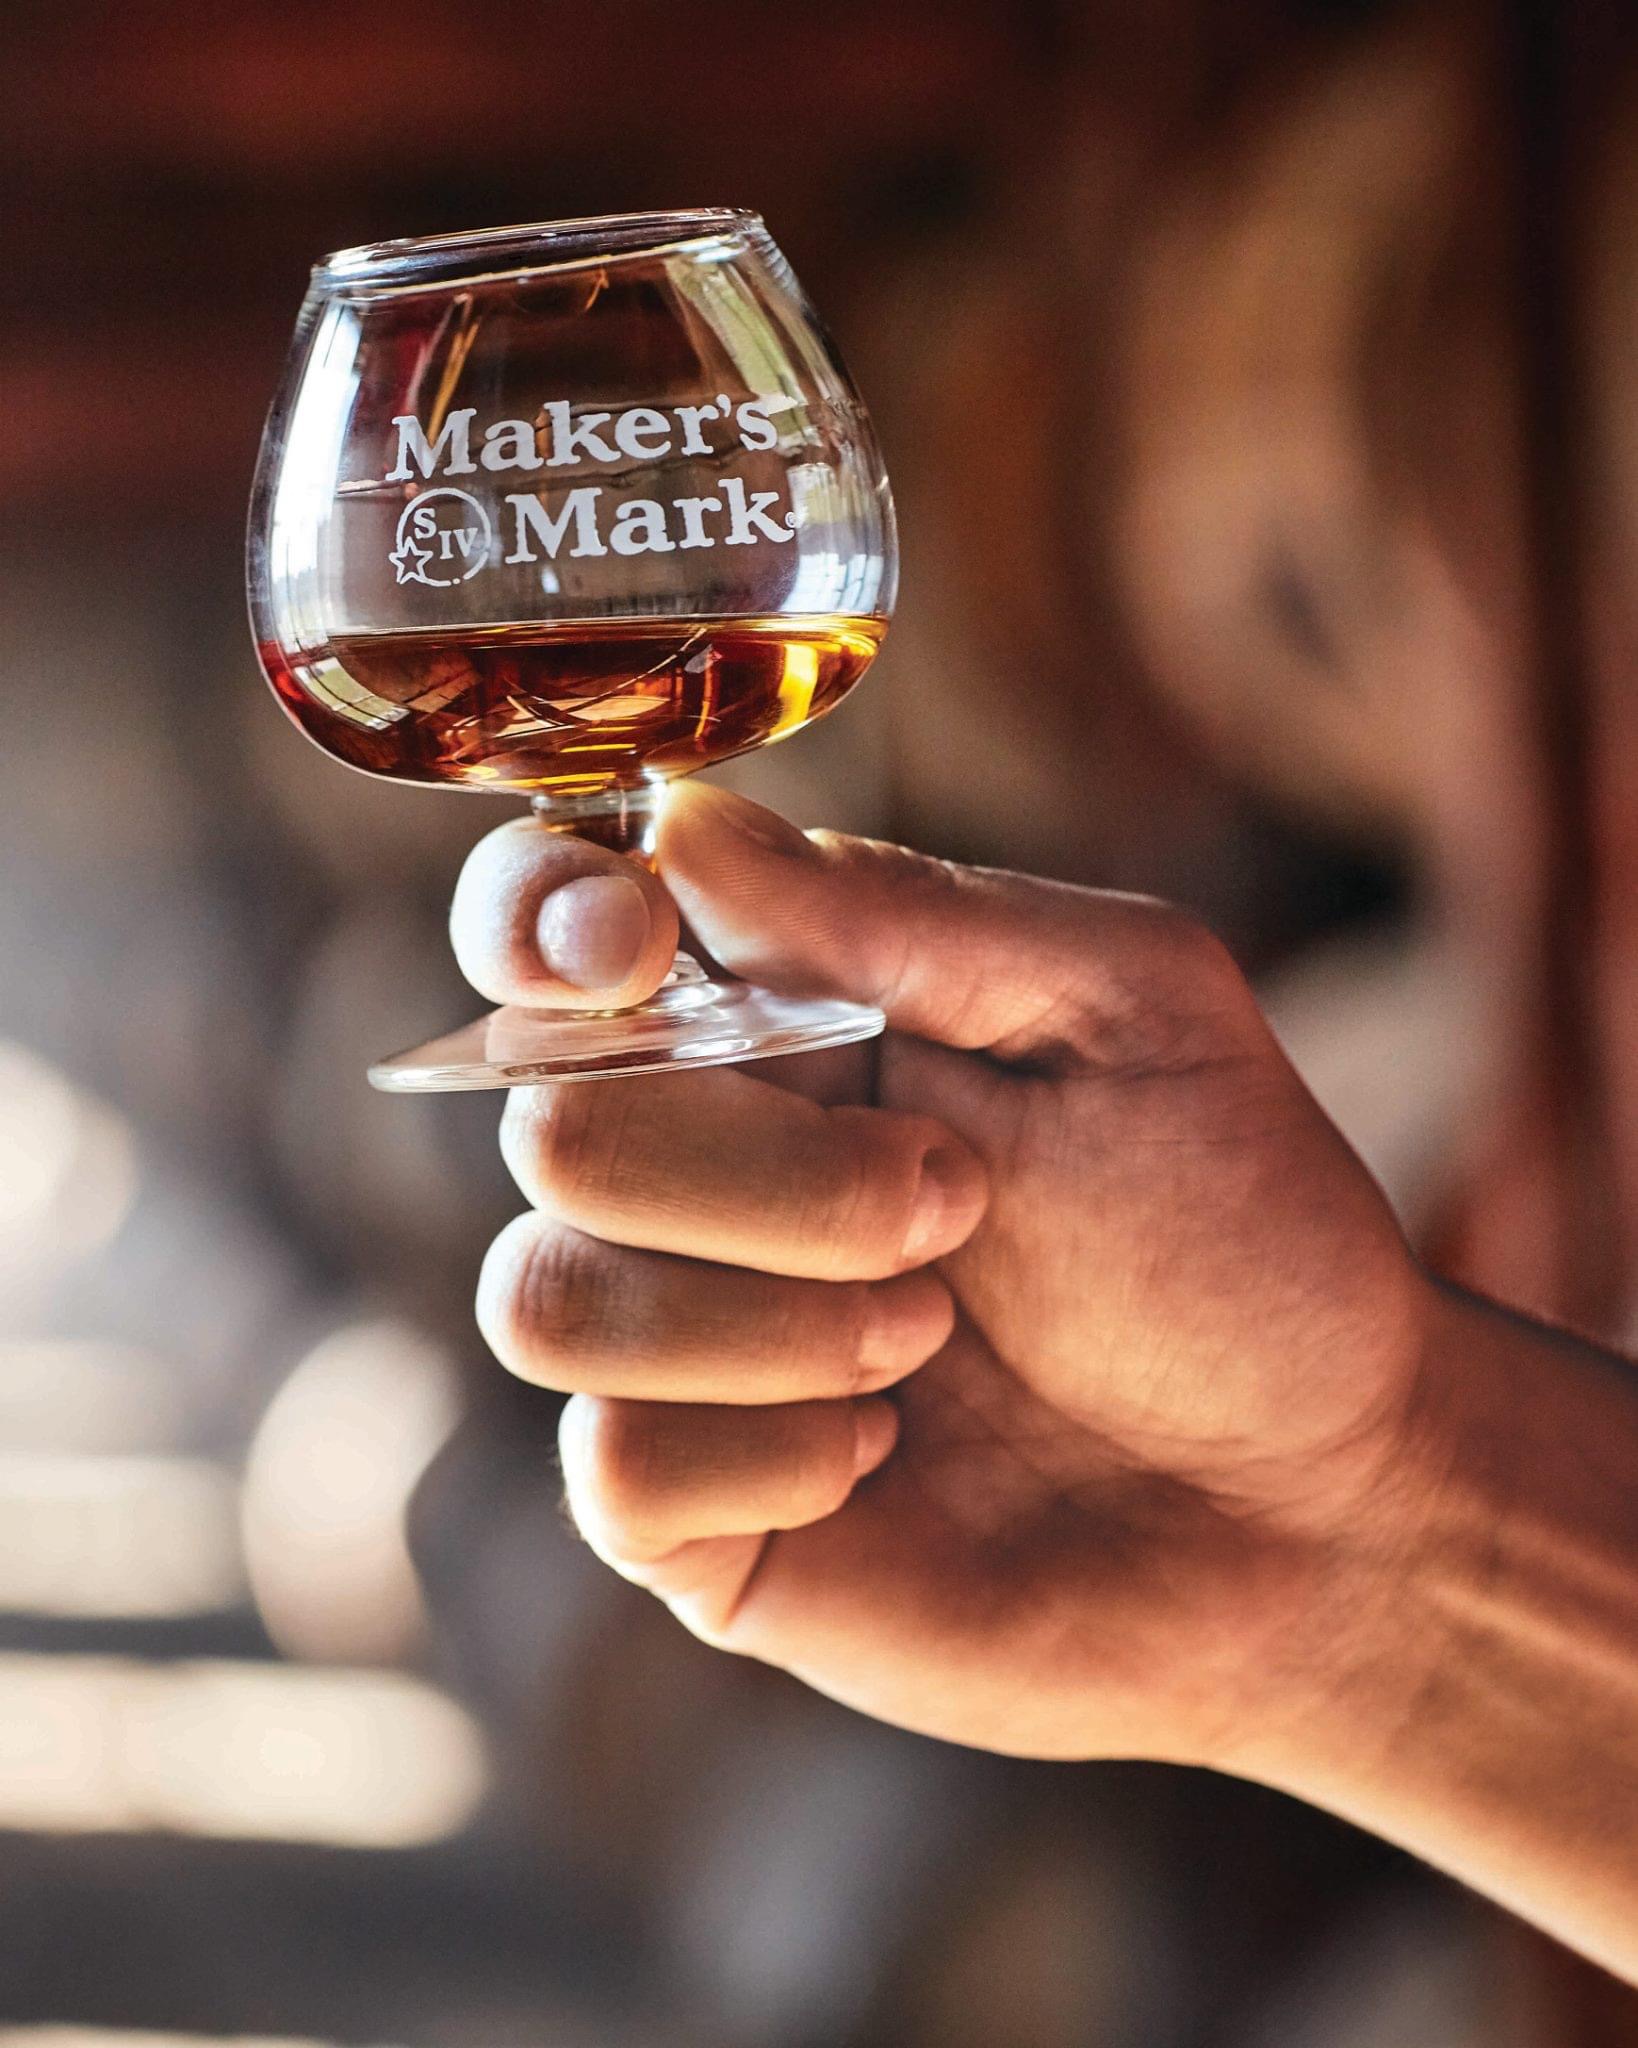 A glass of Maker's Mark Bourbon in Kentucky